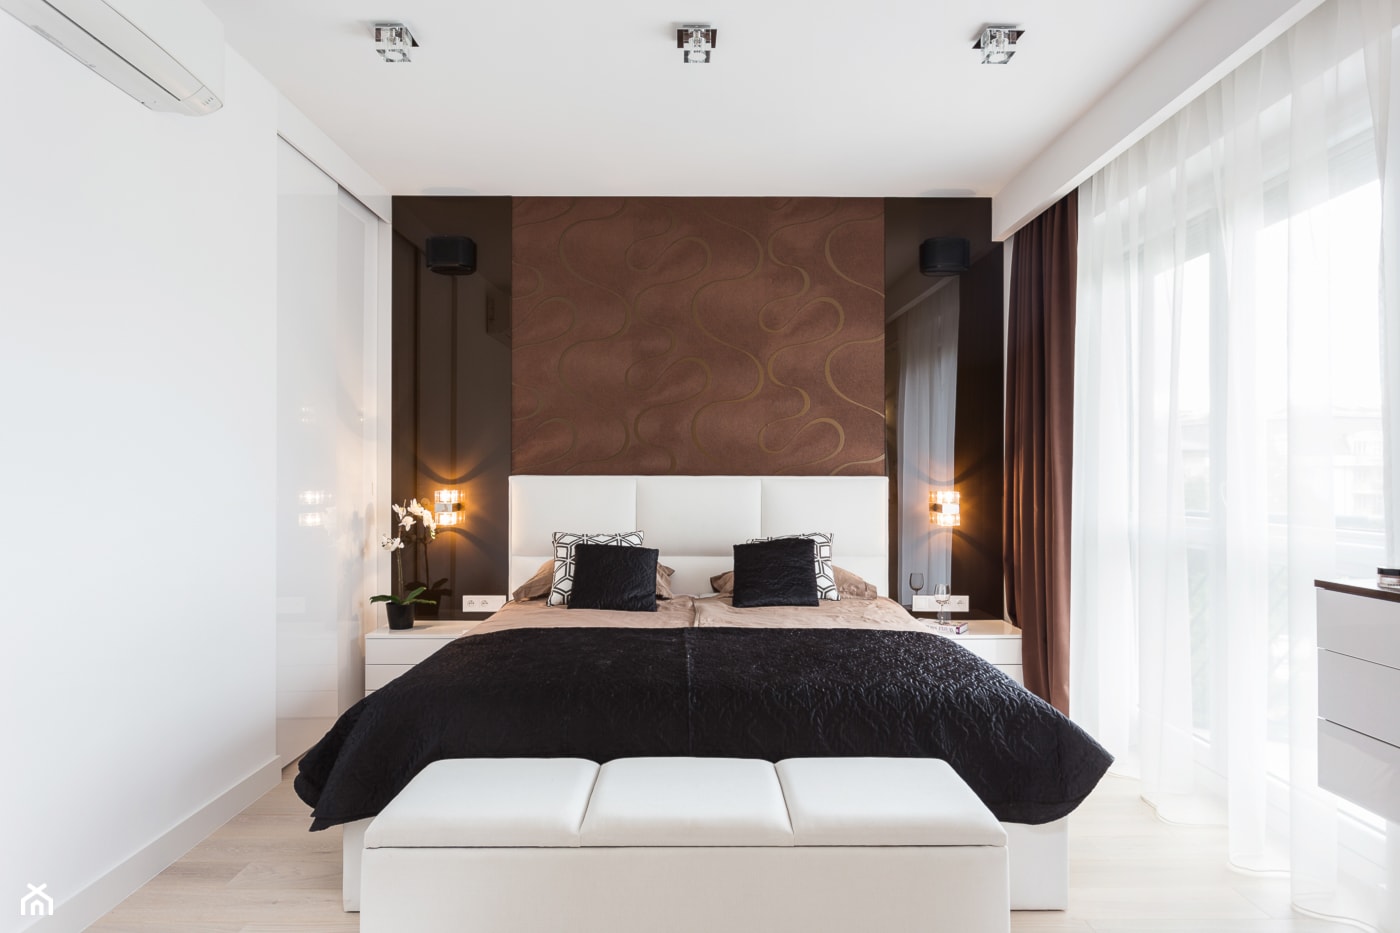 W sypialnia w brązie - Średnia biała brązowa sypialnia, styl nowoczesny - zdjęcie od ARCHITETTO - Homebook